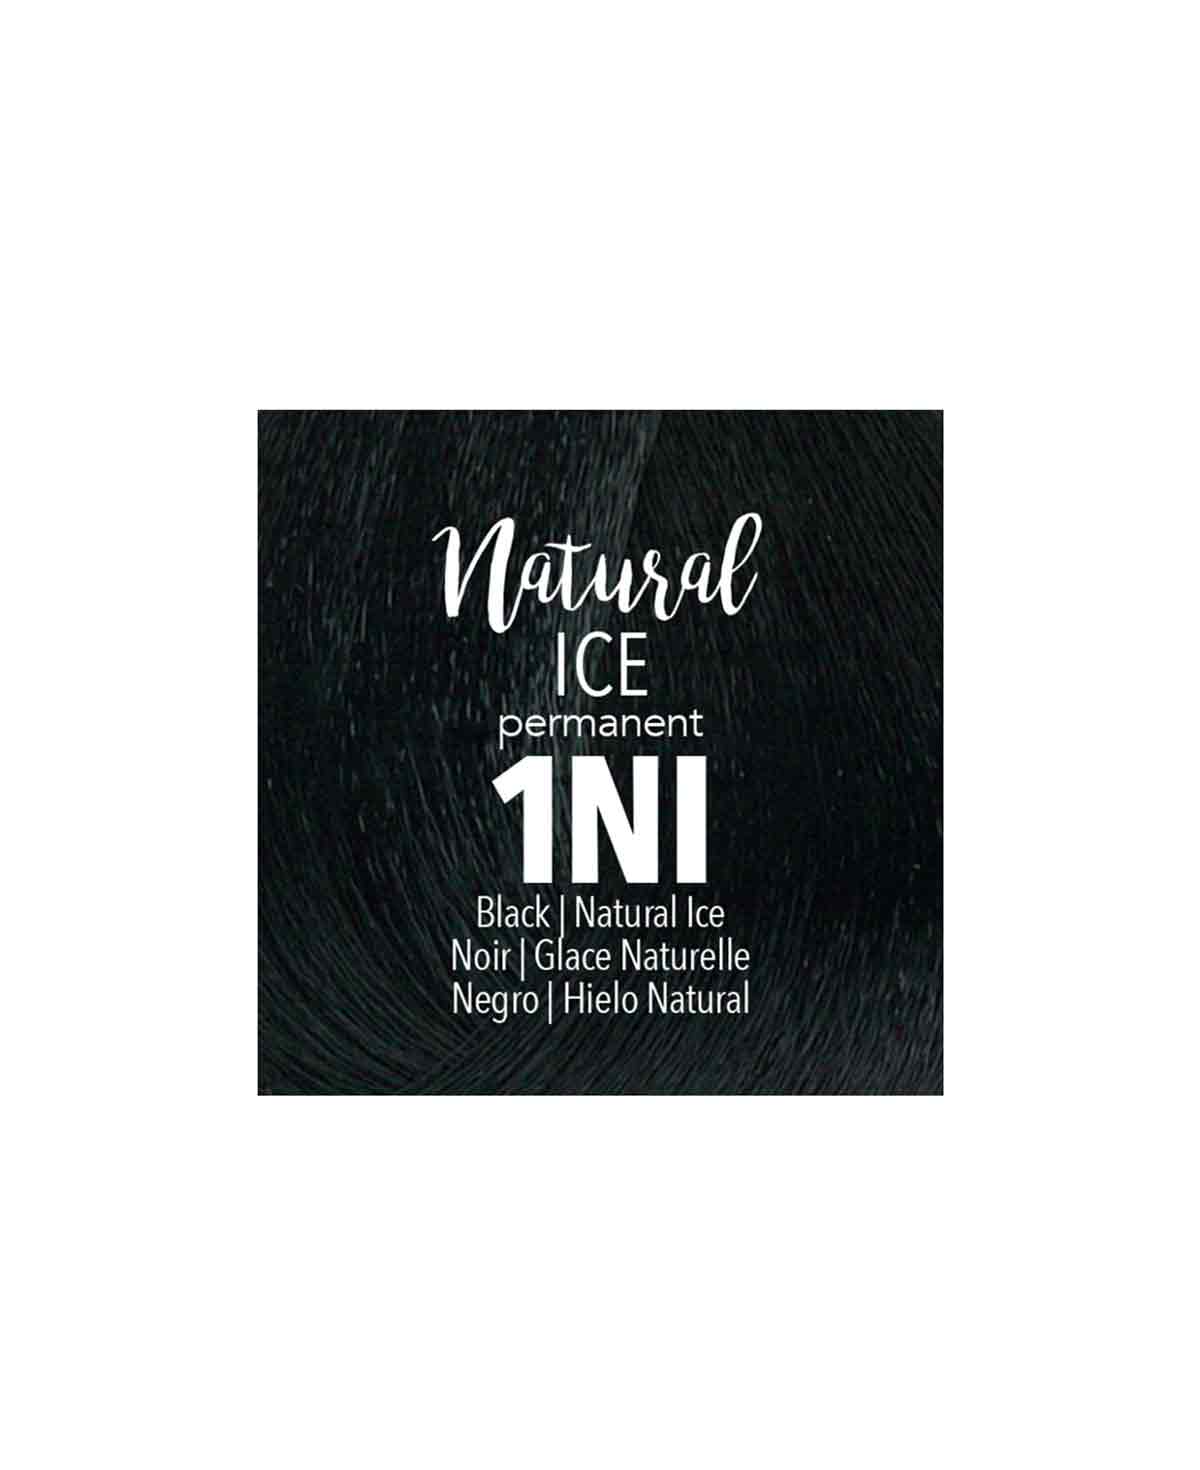 Mydentity - 1NI Black Natural Ice